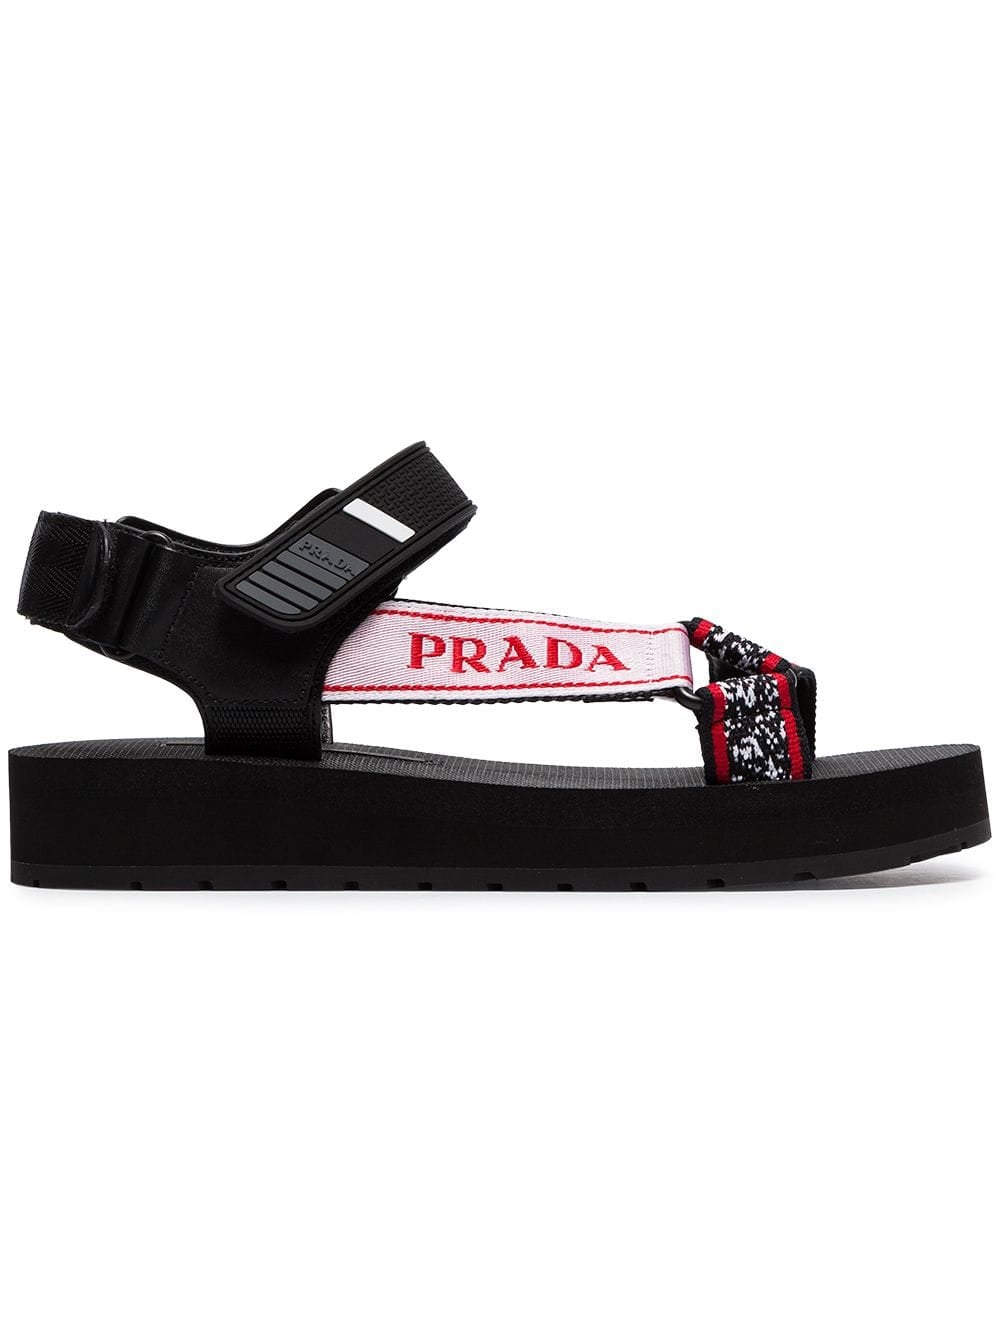 prada sandals 2019